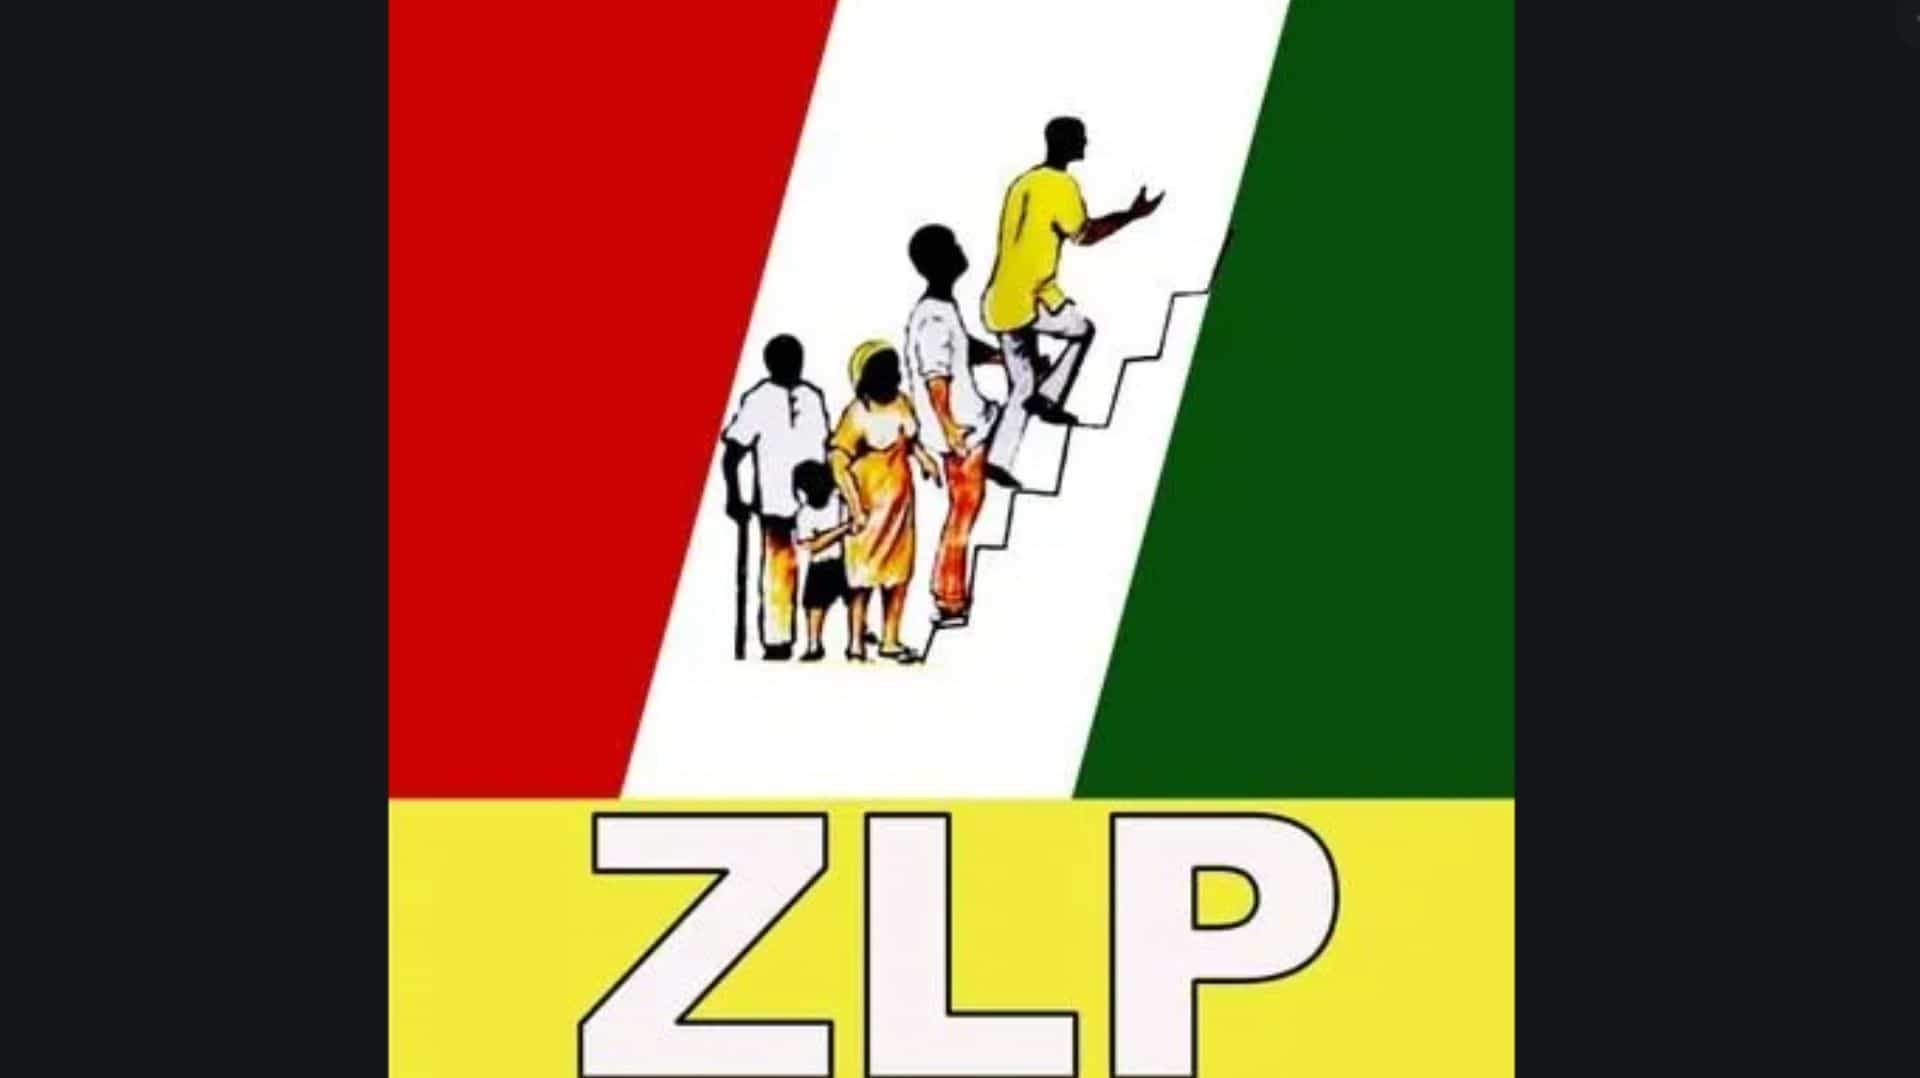 Zenith labour party